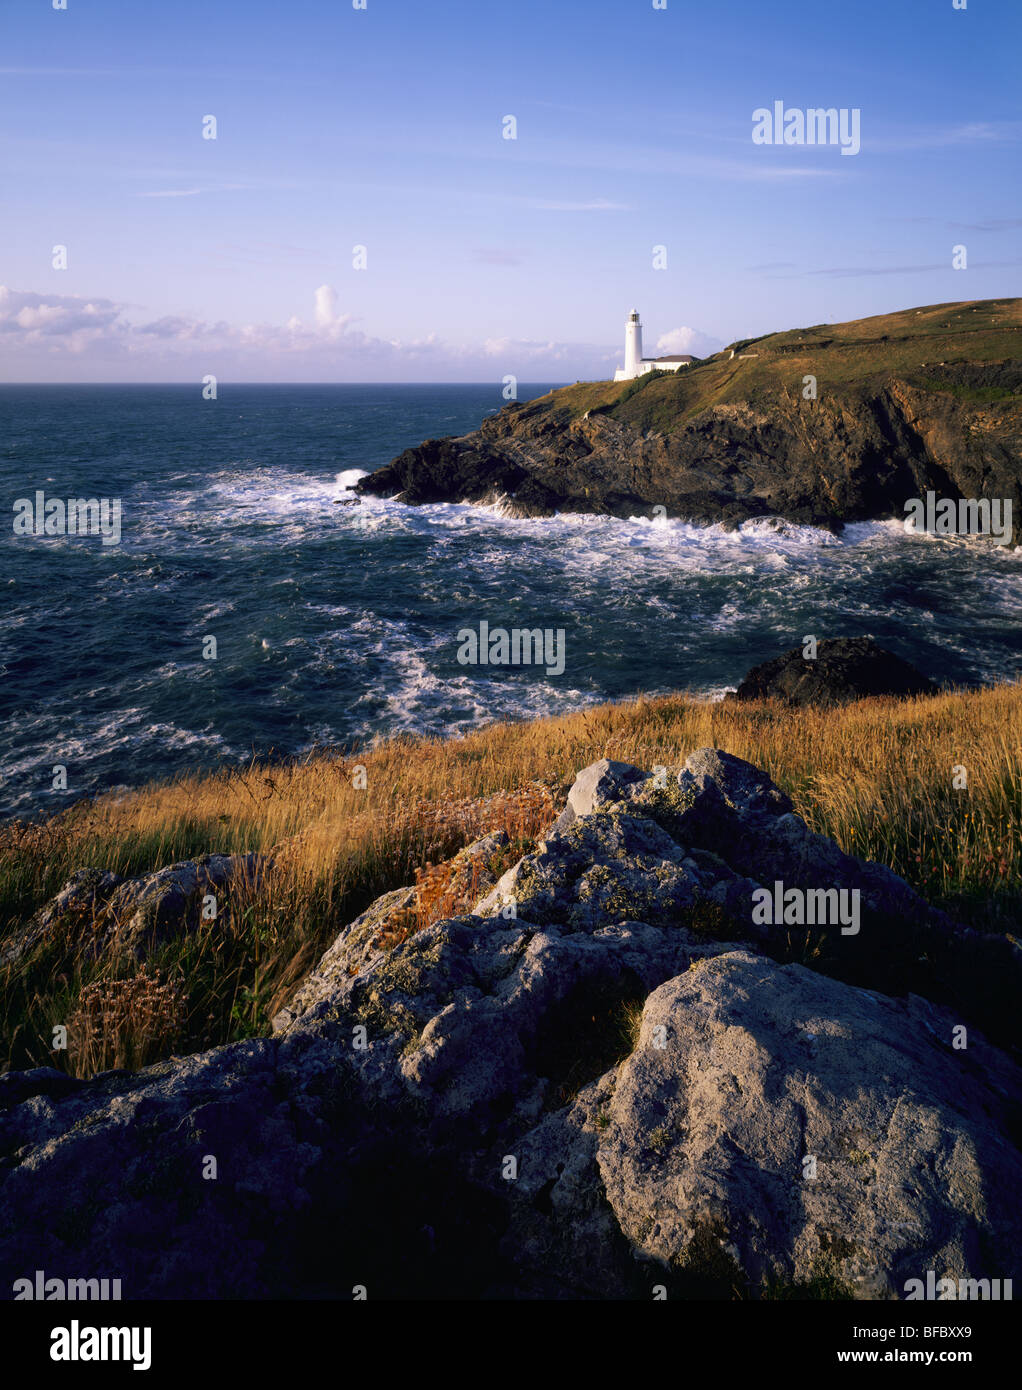 Stencking Cove et le phare de Trevose Head vu de Dinas Head sur la côte nord des Cornouailles près de Padstow, Cornouailles, Angleterre. Banque D'Images